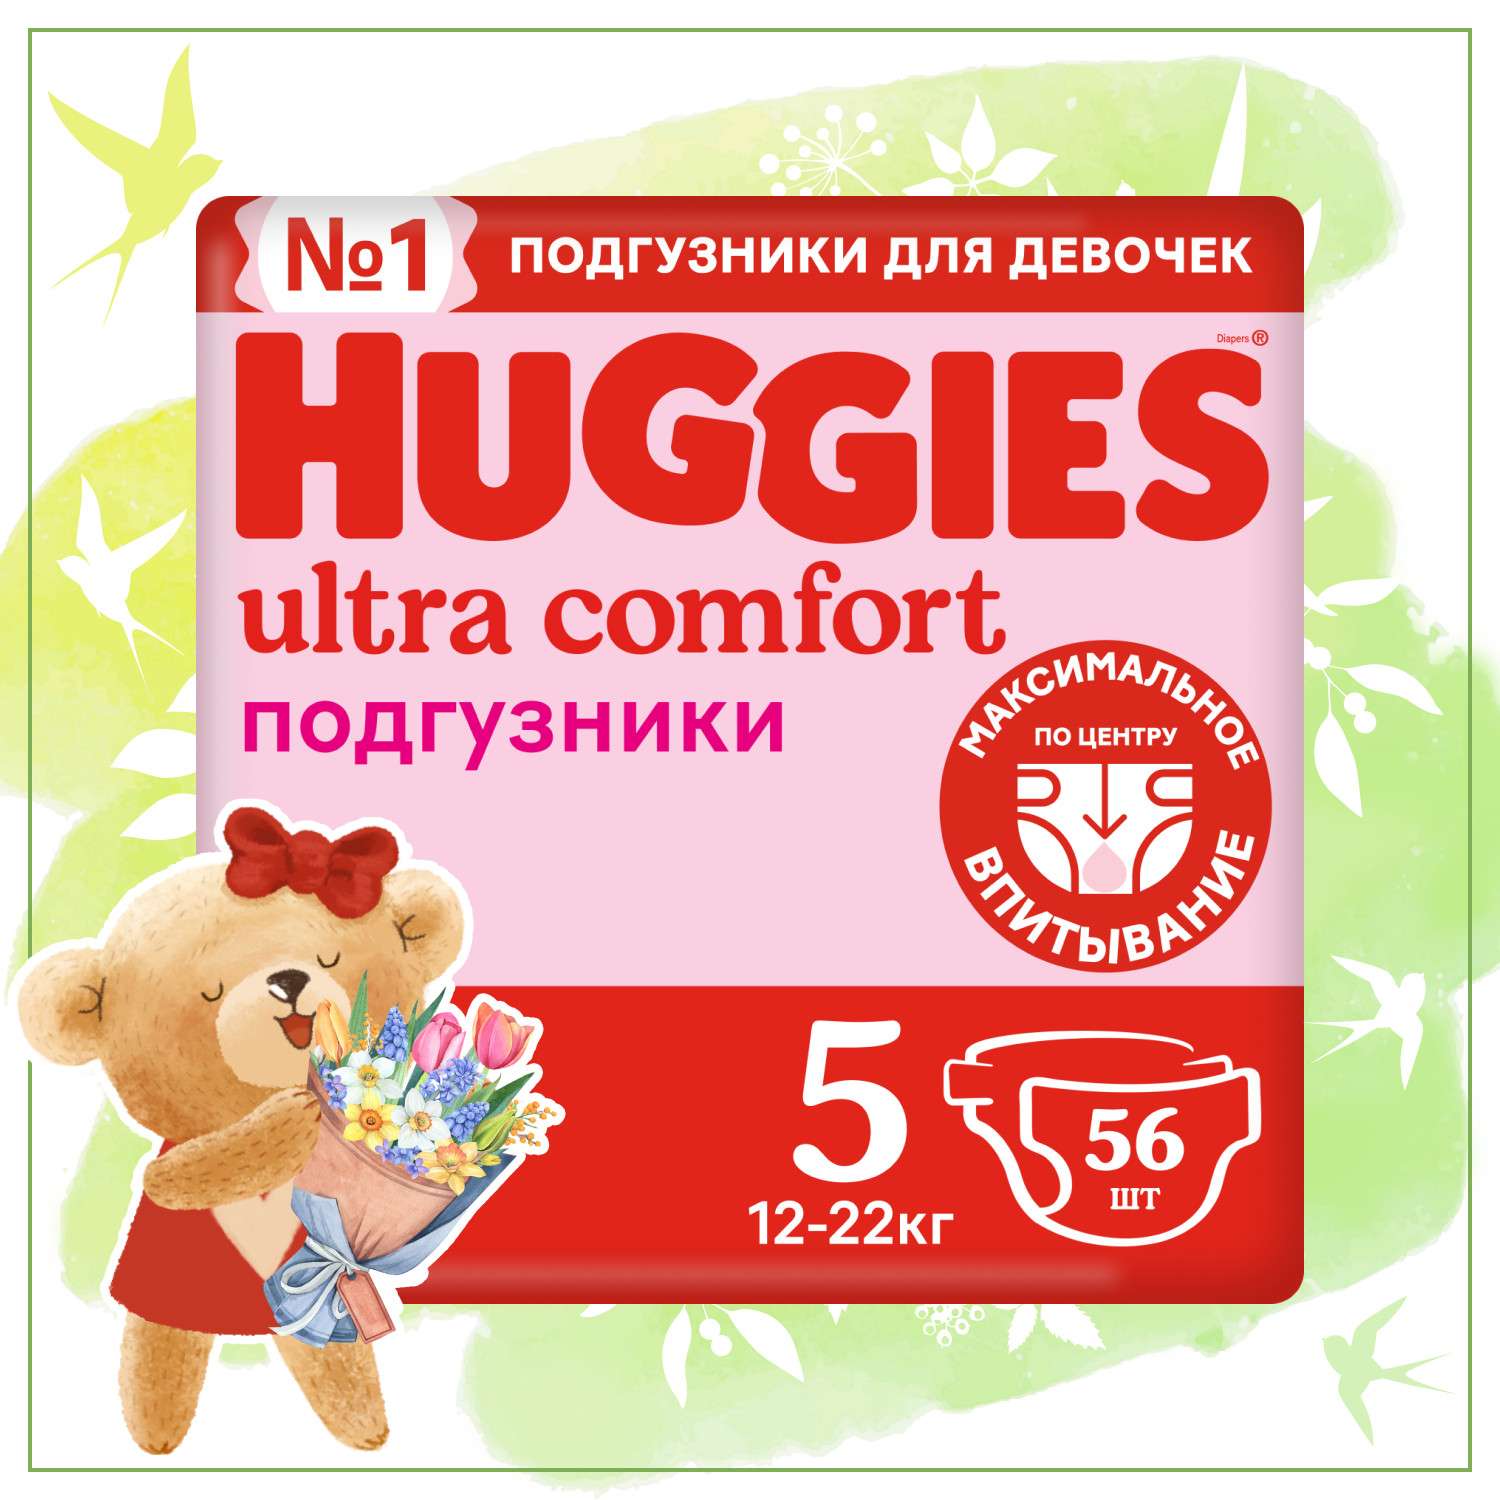 Подгузники Huggies Ultra Comfort для девочек 5 12-22кг 56шт - фото 1